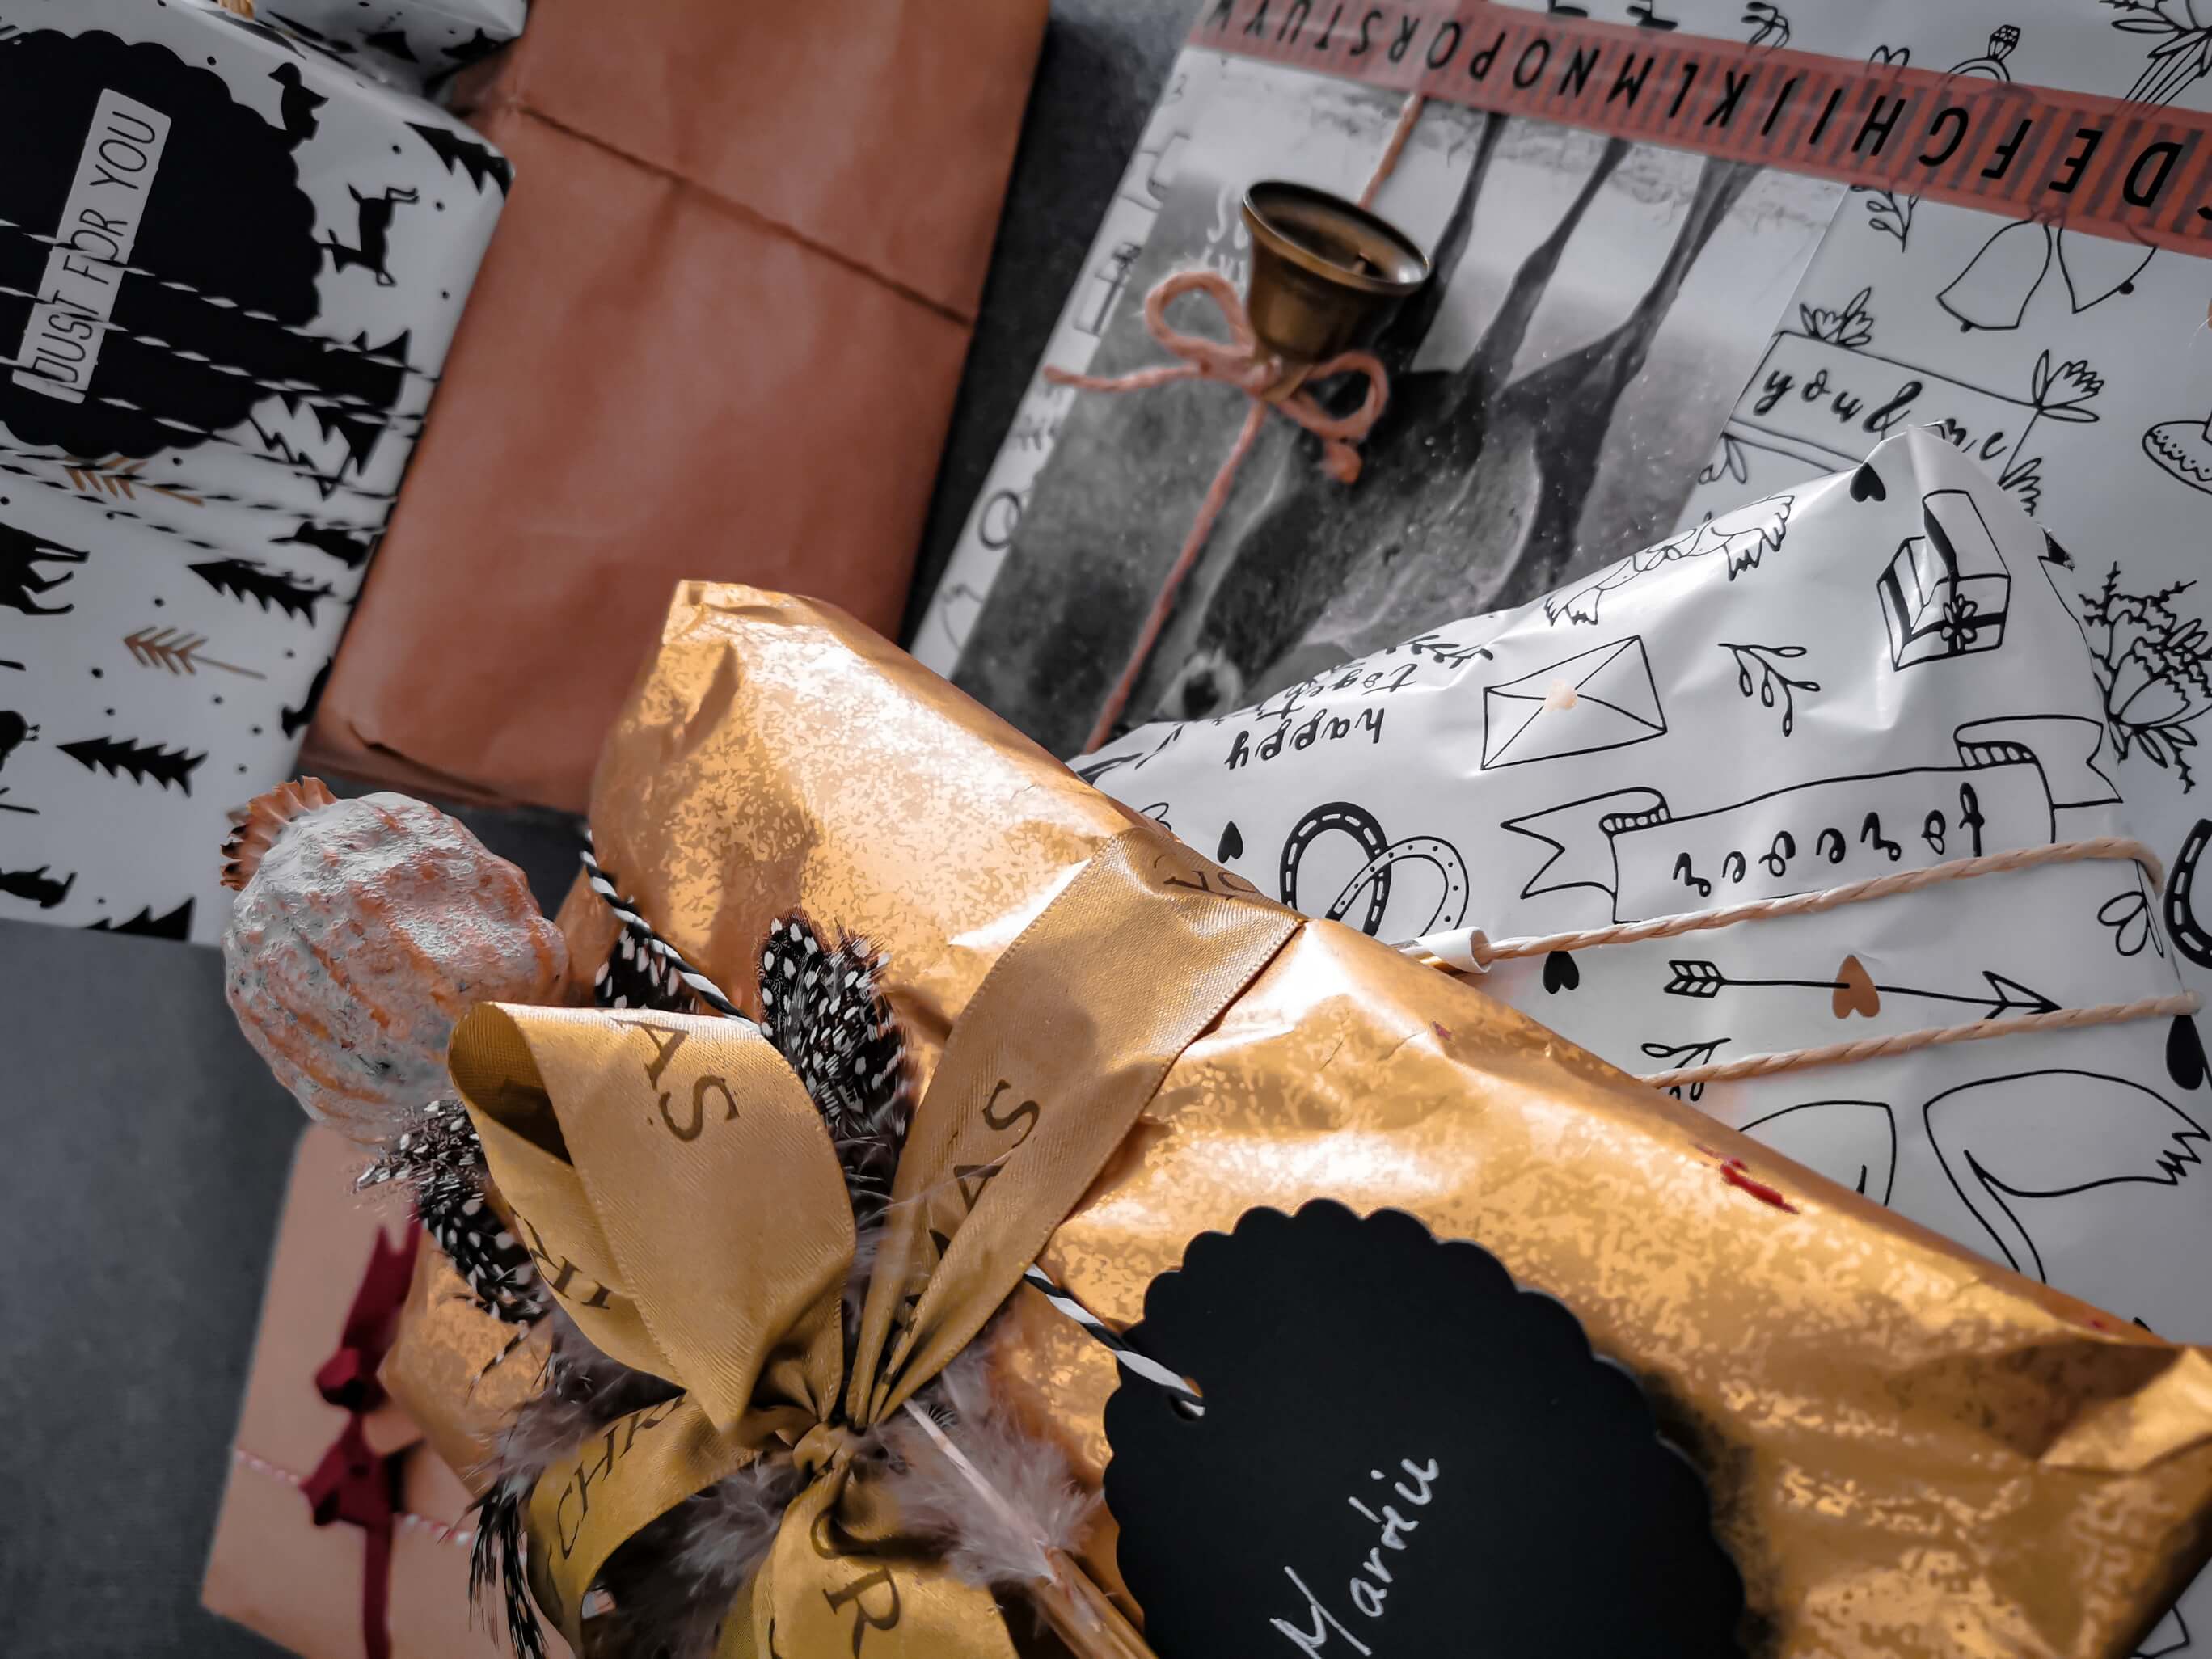 IMG 20191207 105041 2 resized 20191216 090829936 - Geschenke verpacken: 11 kreative Tipps zum Selbermachen